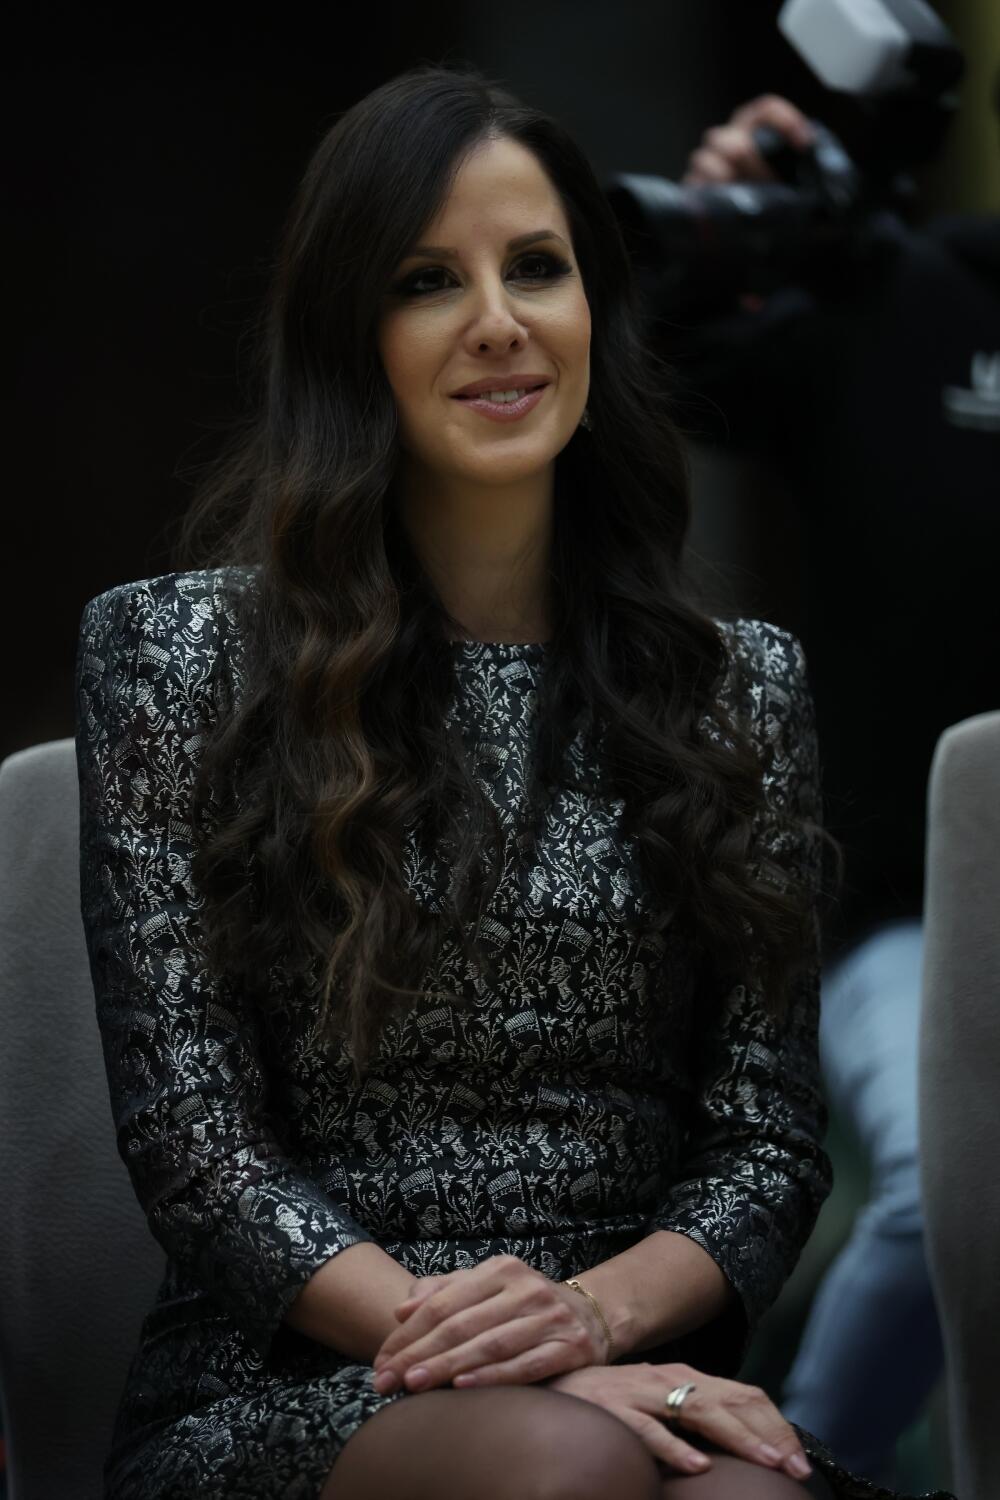 <p>Na sinoćnoj modnoj reviji "Jovanka u boji" najviše pažnje privukla je srpska prva dama Tamara Vučić</p>